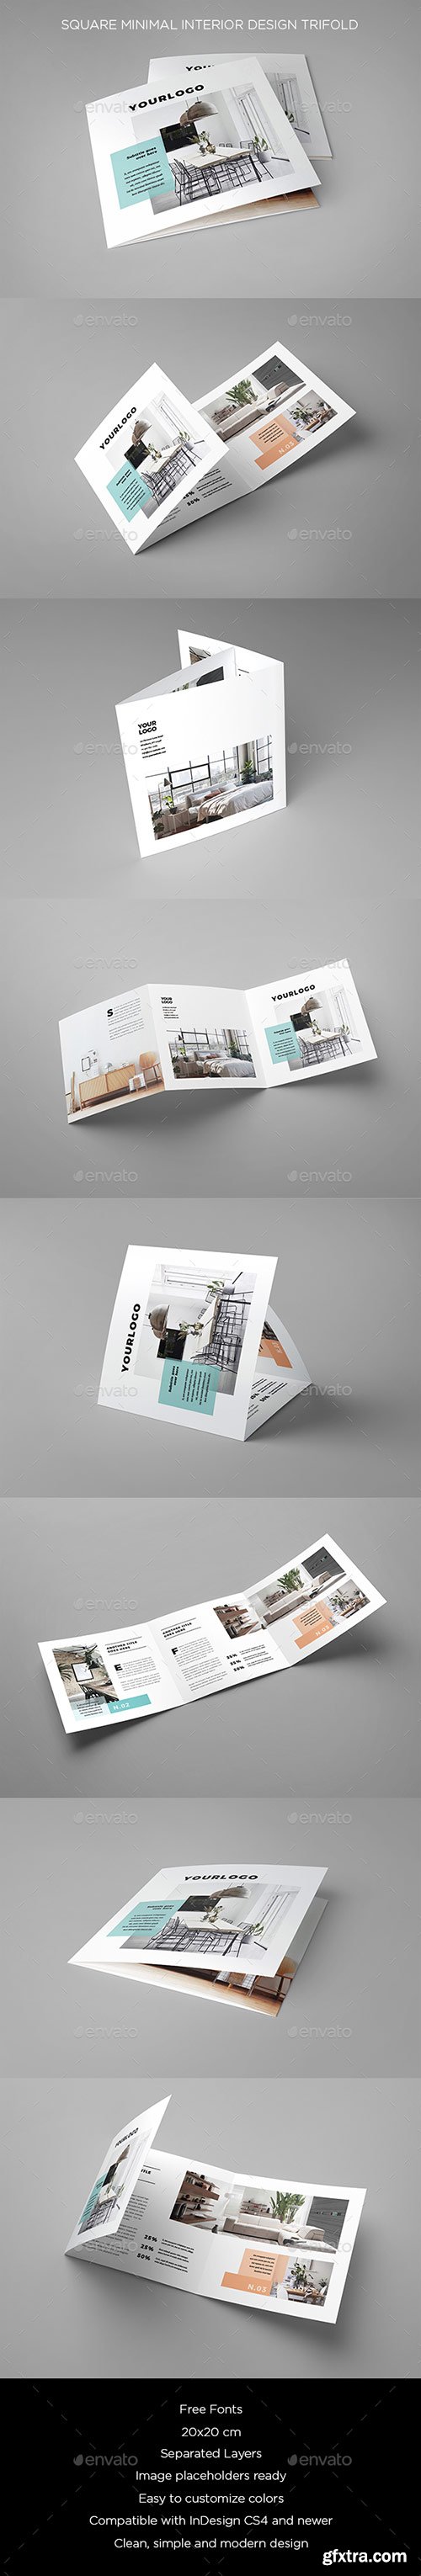 Graphicriver - Square Minimal Interior Design Trifold 20439624